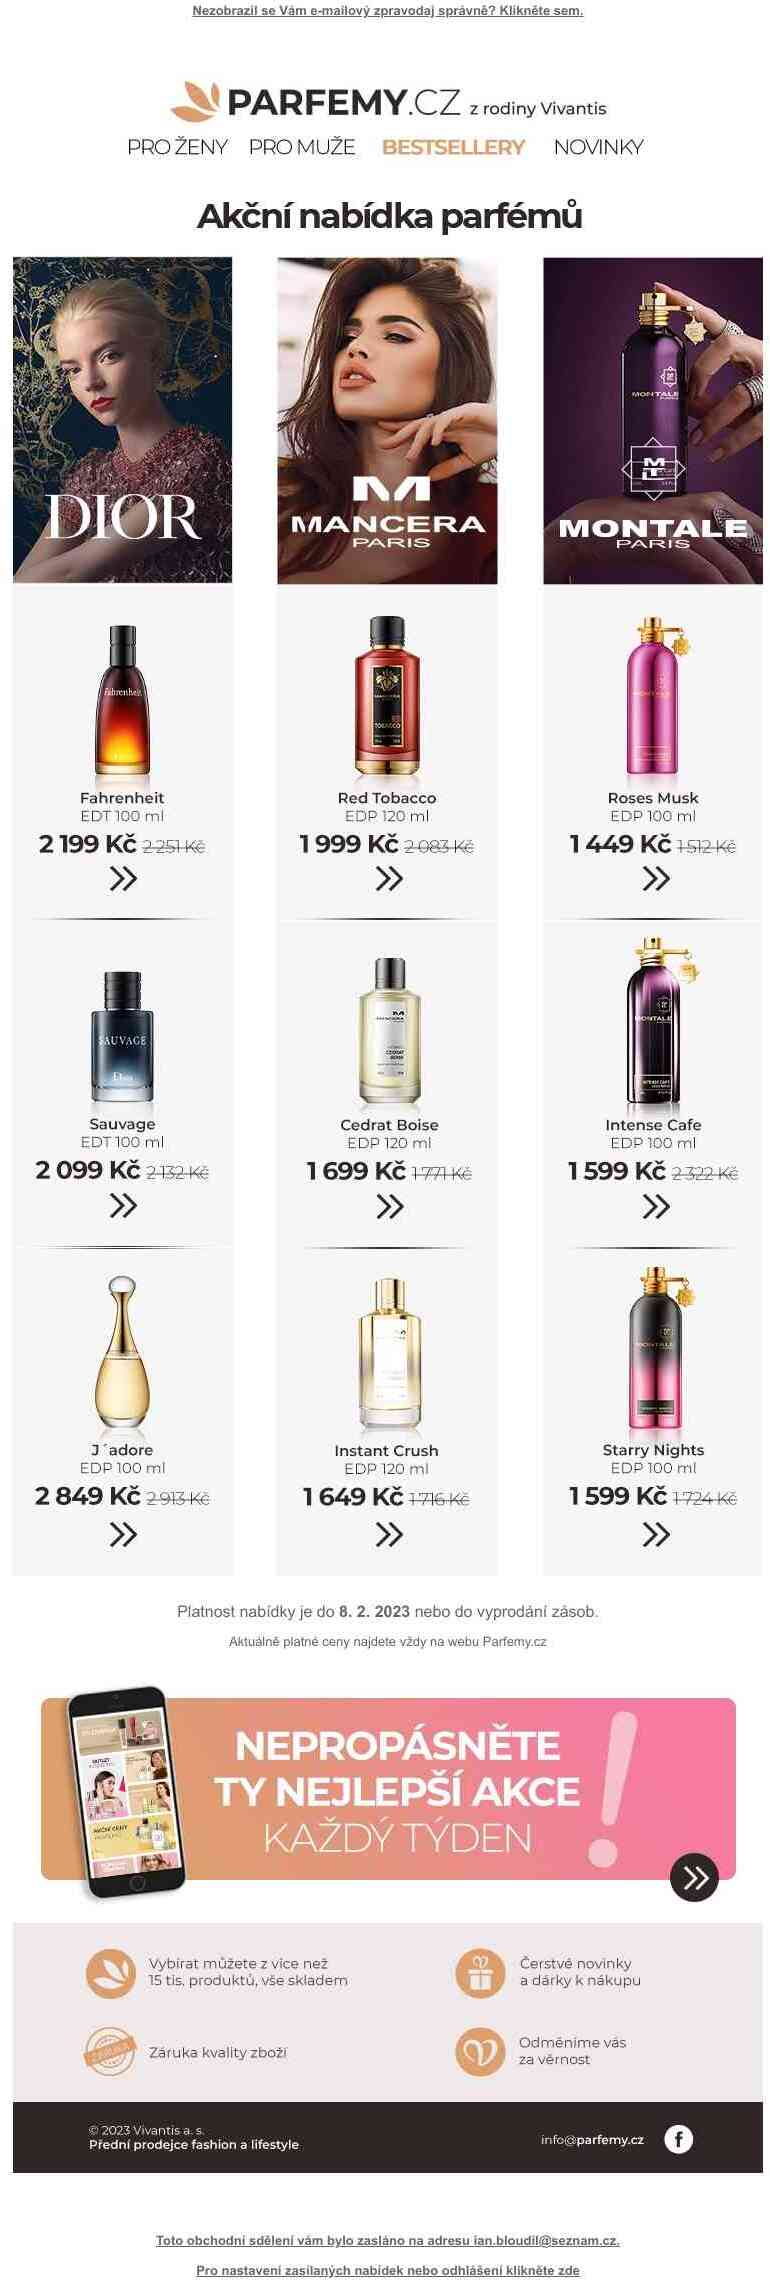 Parfémy Dior, Mancera a Montale za skvělé ceny ♥